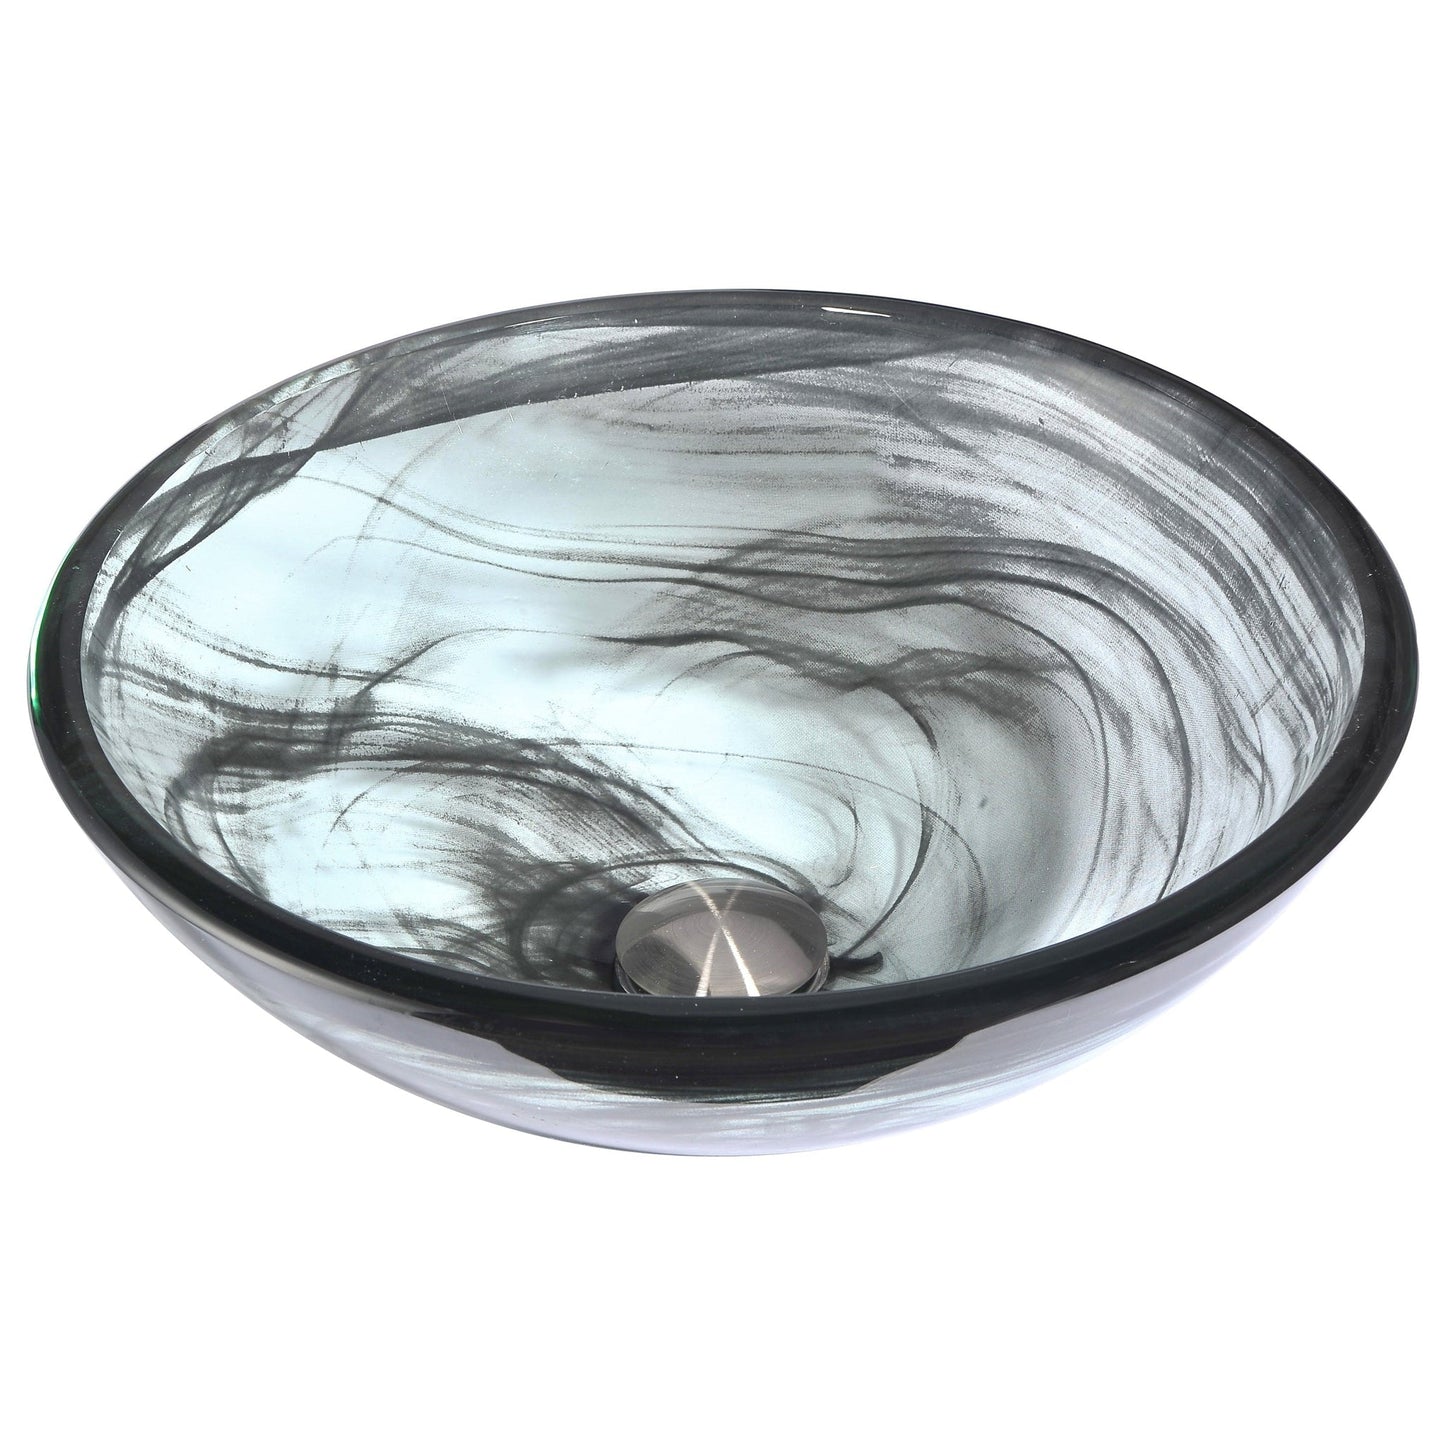 ANZZI Mezzo Series 17" x 17" Round Slumber Wisp Deco-Glass Vessel Sink With Polished Chrome Pop-Up Drain